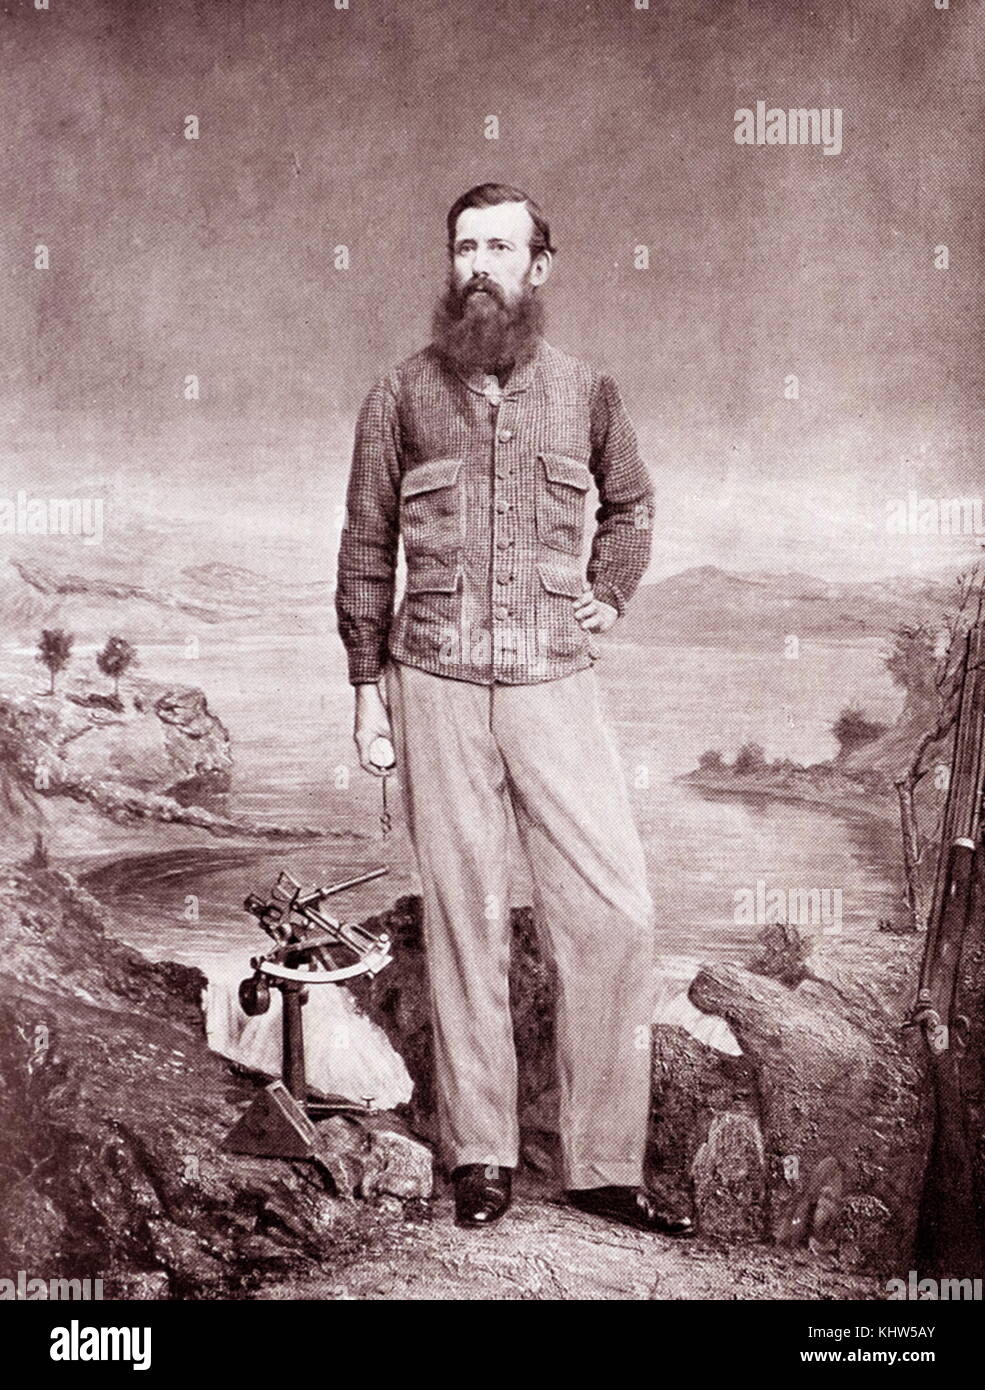 Fotografische Portrait von John Hanning Speke (1827-1864) ein Offizier in der Britischen Armee, die drei Sondierungsstellungnahmen Expeditionen nach Afrika. Vom 19. Jahrhundert Stockfoto